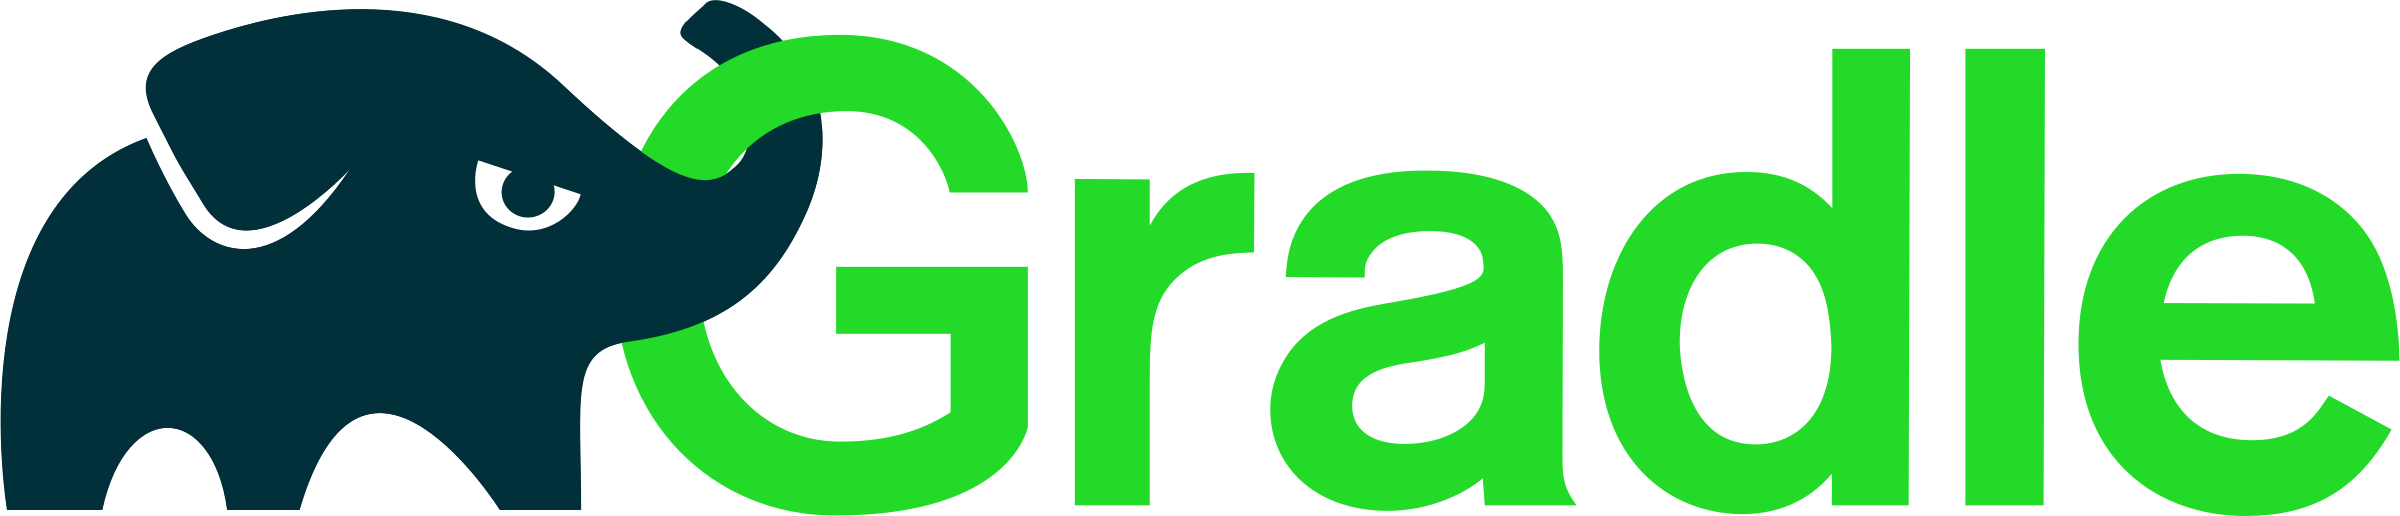 gradel_logo